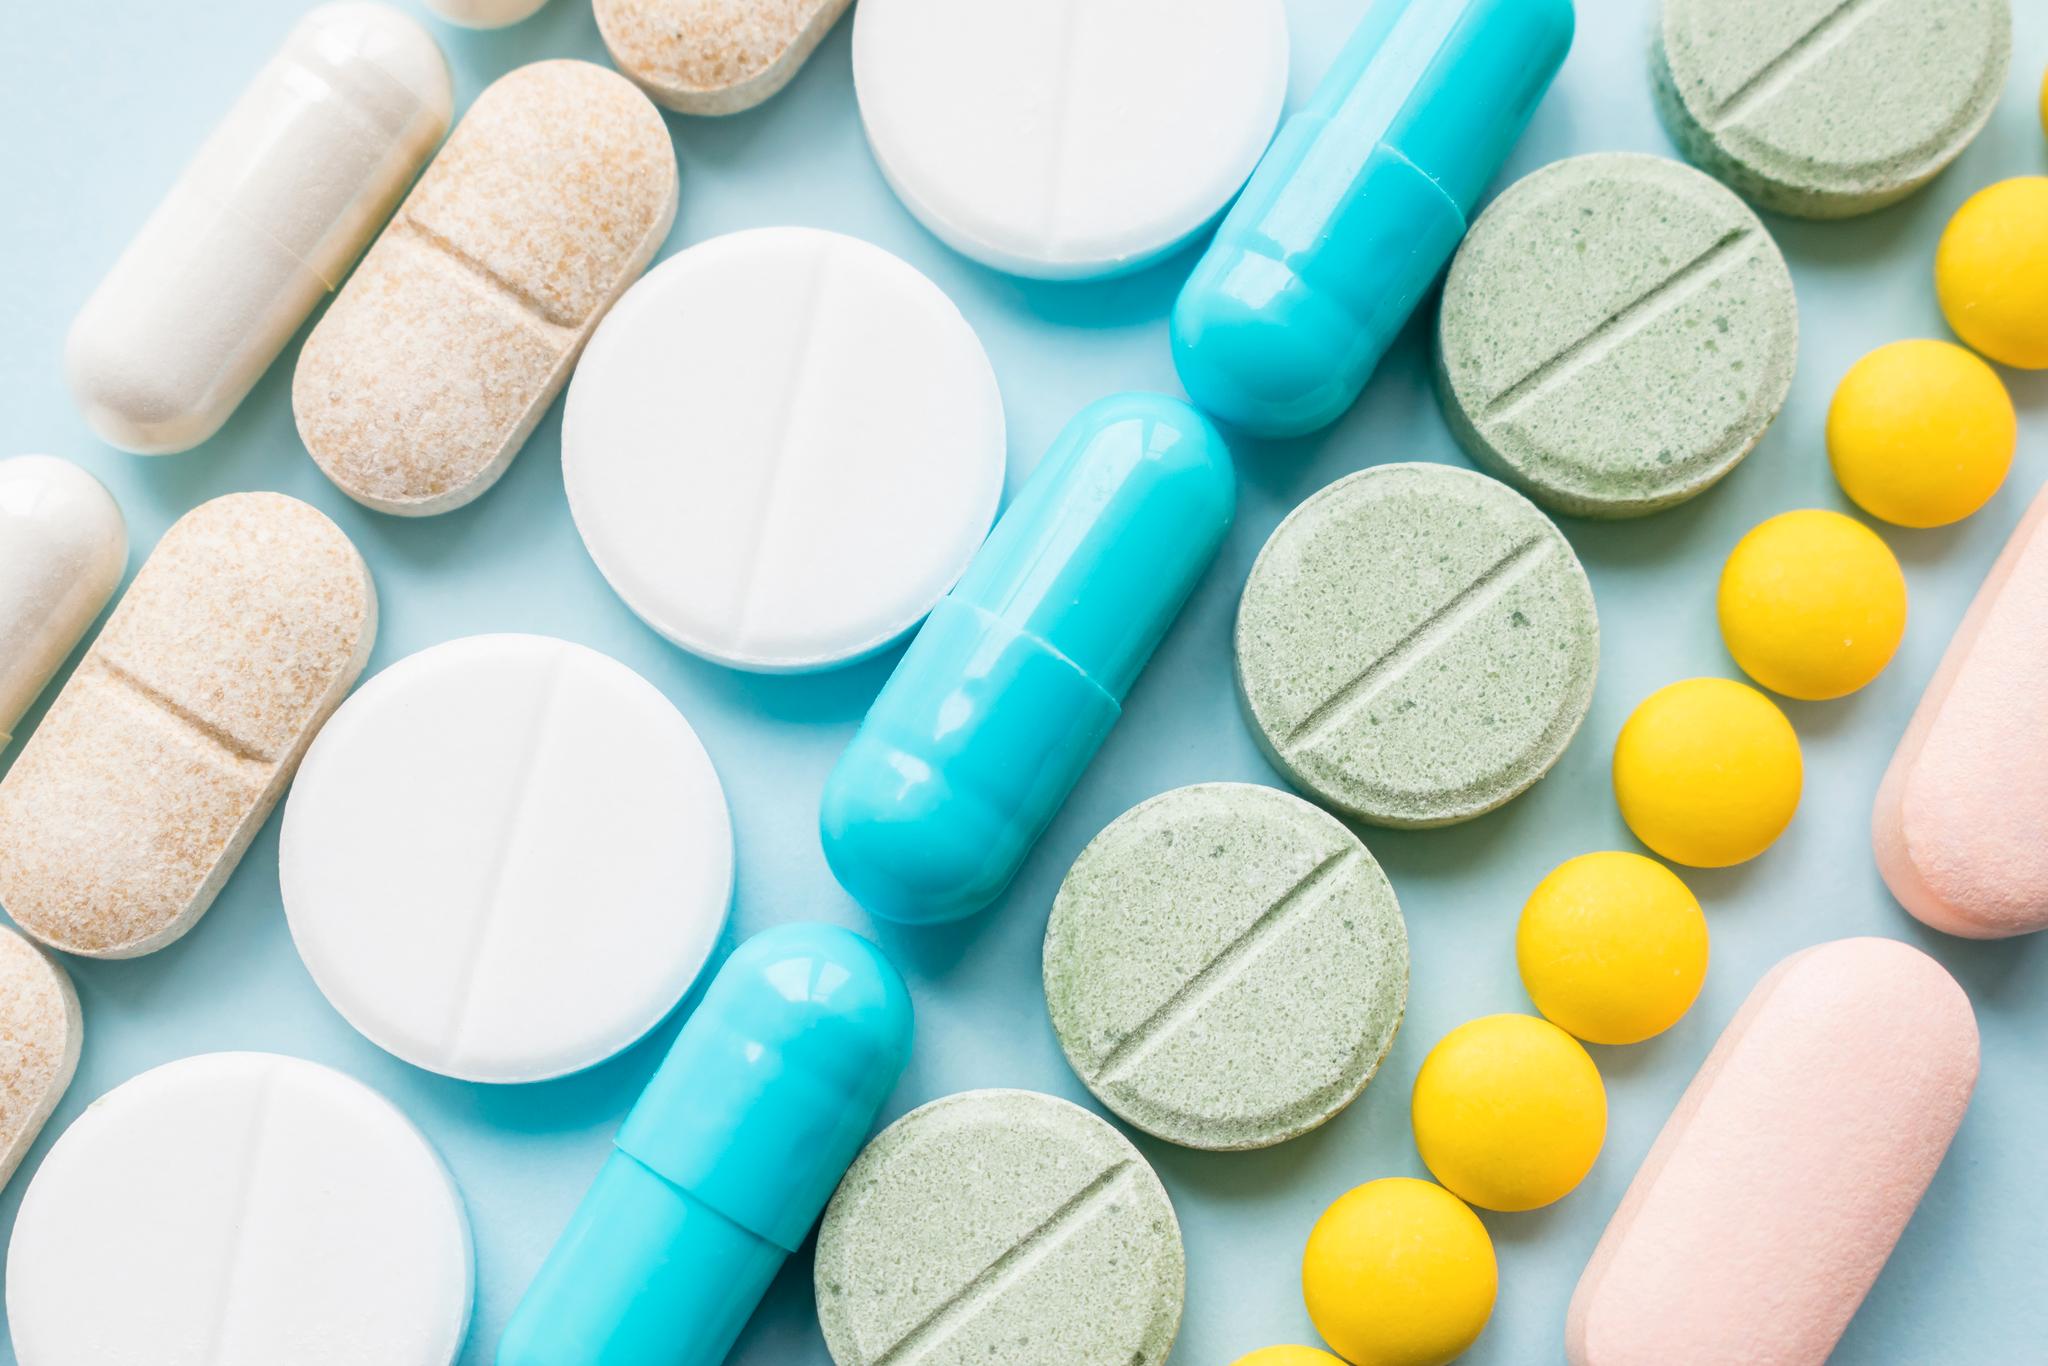 Det er grunn til å nøle med å stole blindt på pressemeldinger om nye legemidler, skriver Atle Fretheim. 